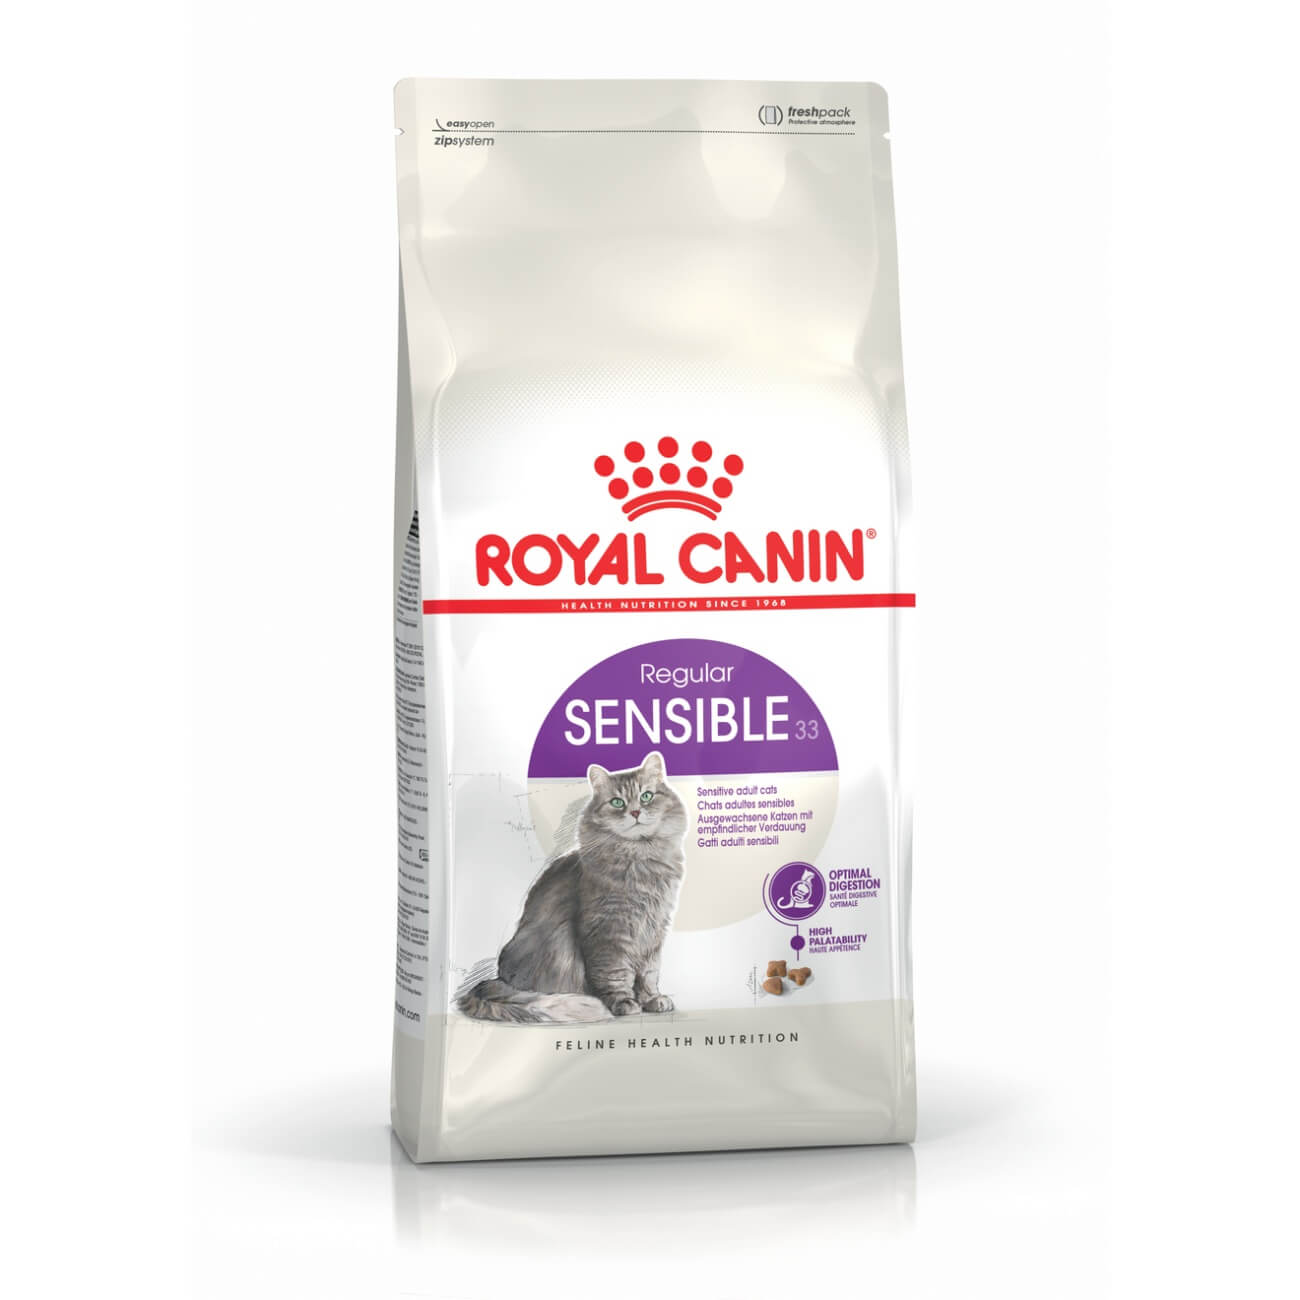 Royal Canin Sensible - érzékeny emésztésű felnőtt macska száraz táp 10 kg + 2 kg ajándék!